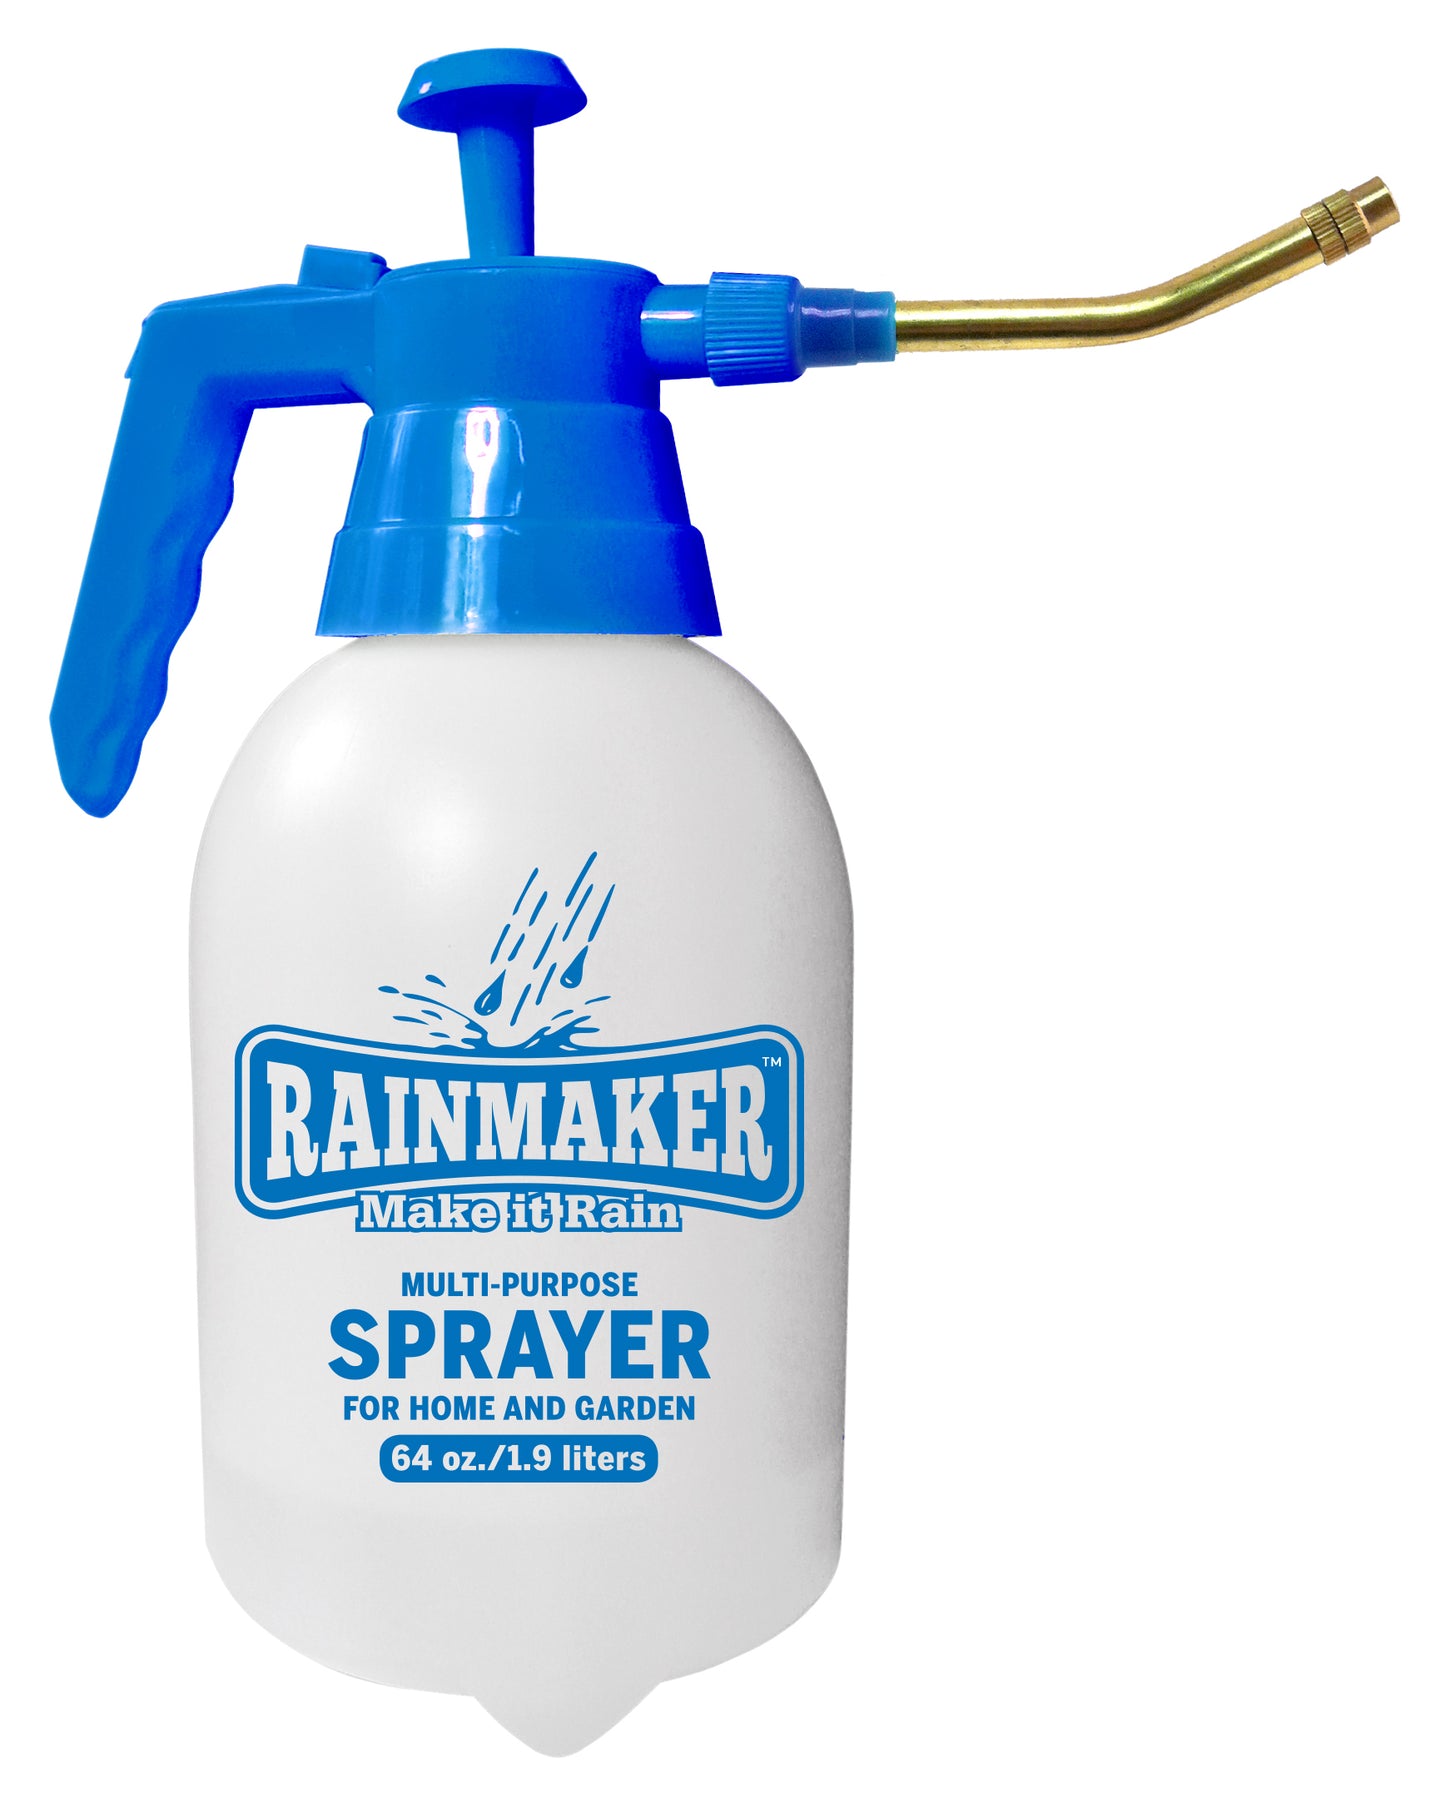 Rainmaker® Pressurized Pump Sprayer